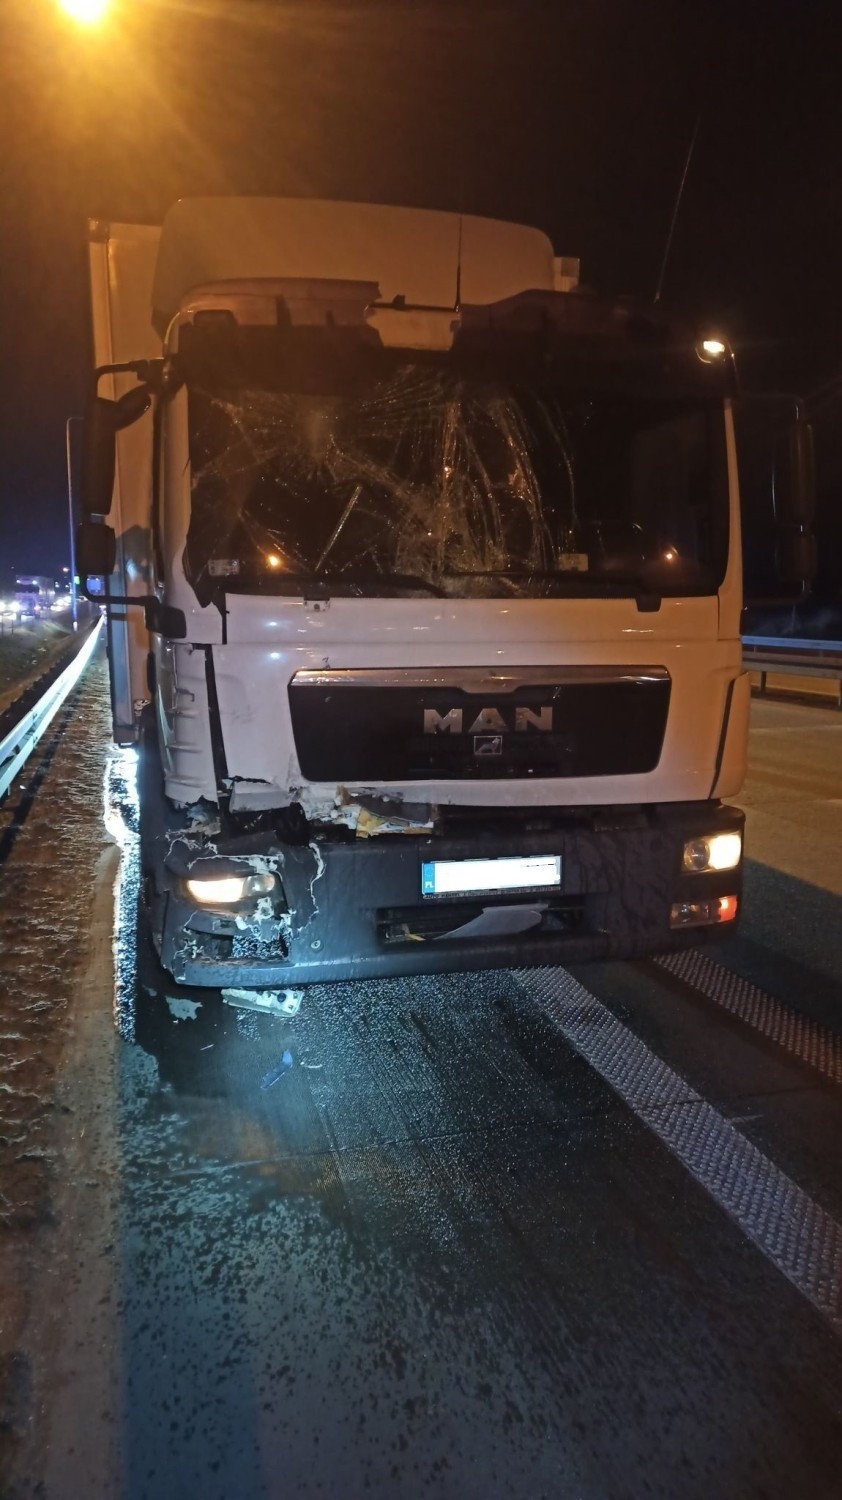 Śmiertelny wypadek na S8 w Studziankach koło Piotrkowa Tryb.: Ciężarówka wjechała w kampera, nie żyje kobieta, dzieci ranne ZDJĘCIA